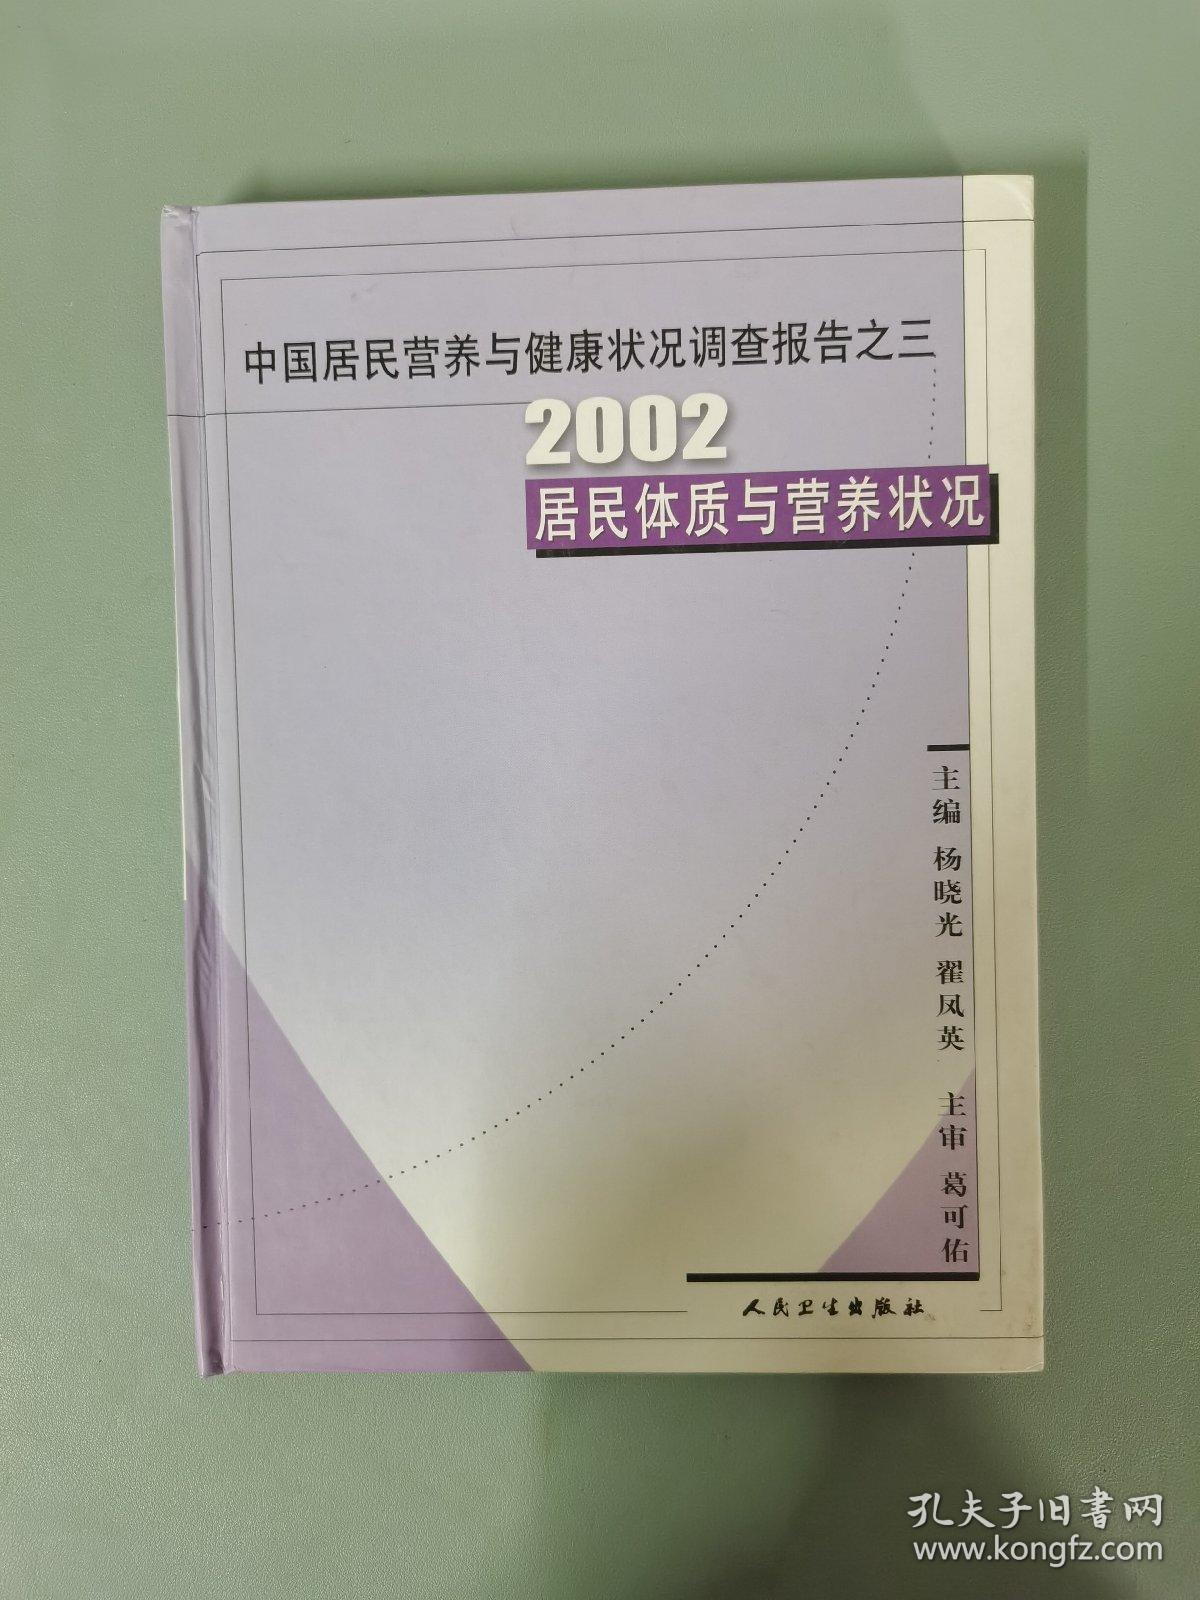 中国居民营养与健康状况调查报告·2002居民体质与营养状况